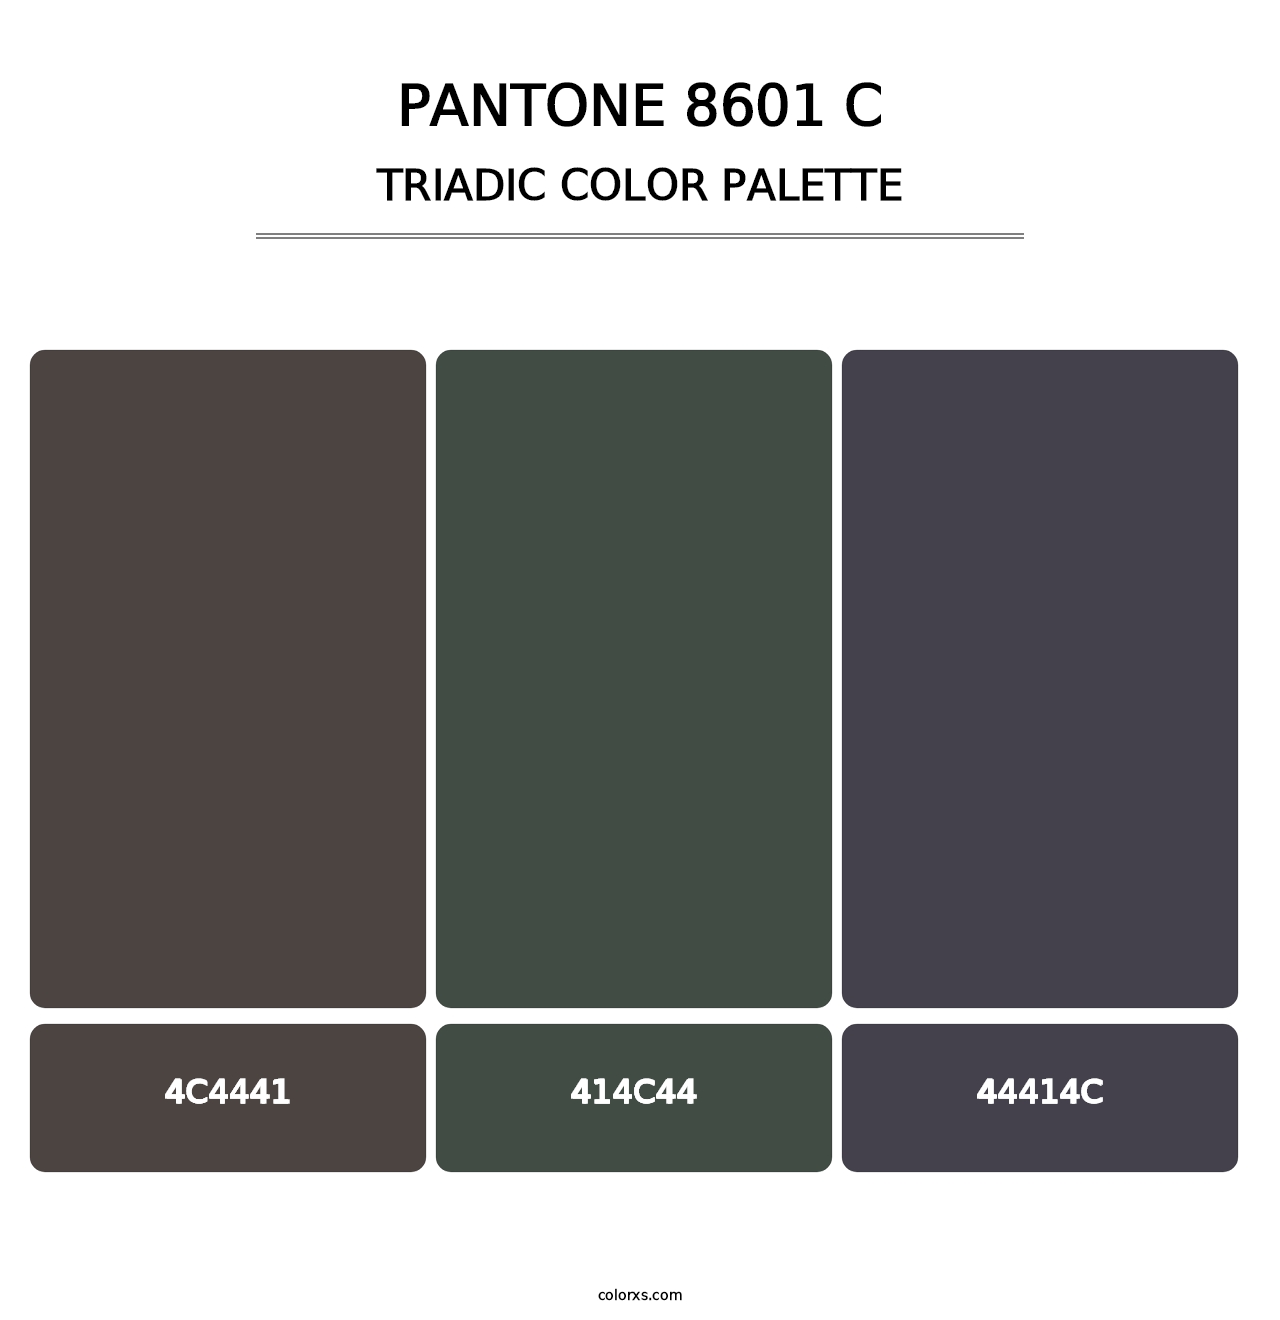 PANTONE 8601 C - Triadic Color Palette